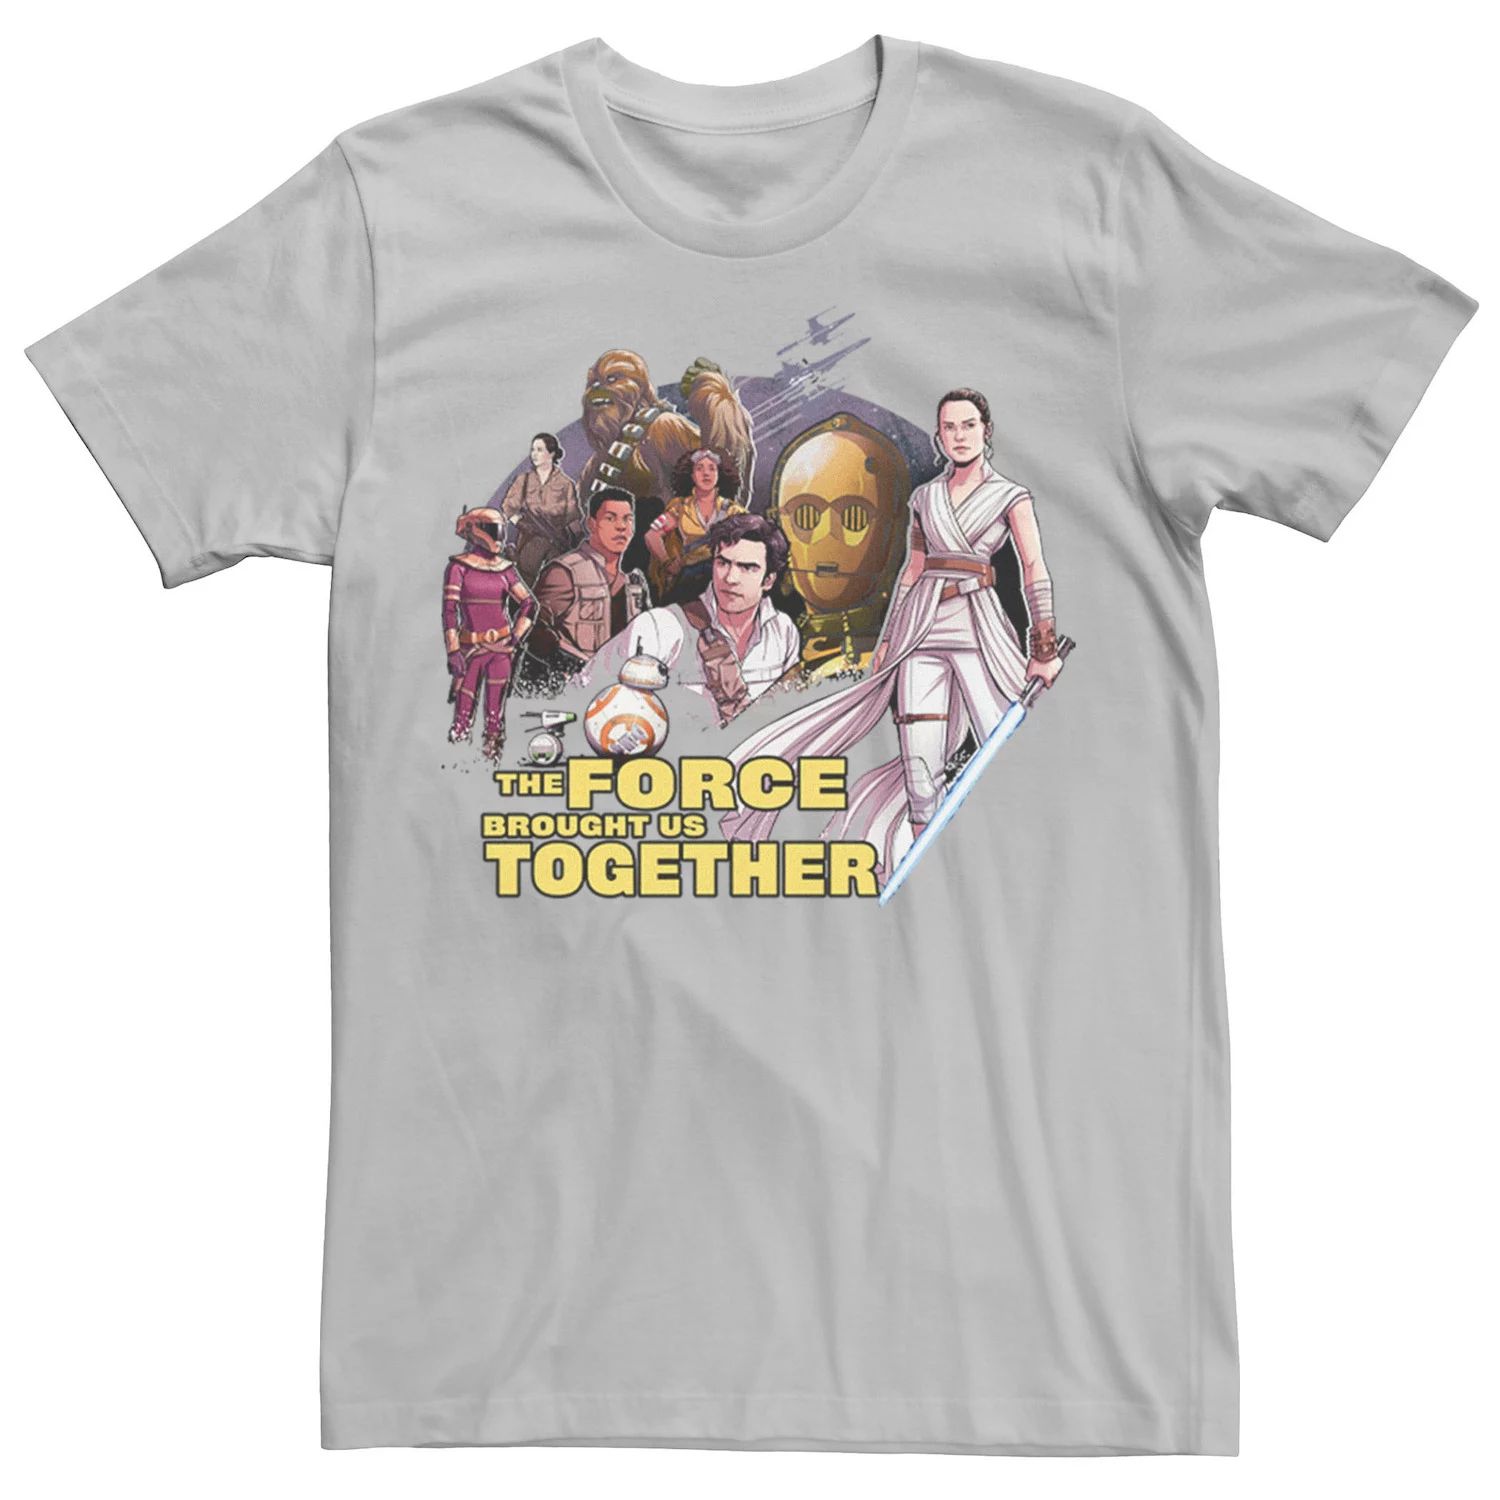 Мужская футболка «Звездные войны: Восстание Скайуокера сплотила нас вместе» Star Wars, серебристый